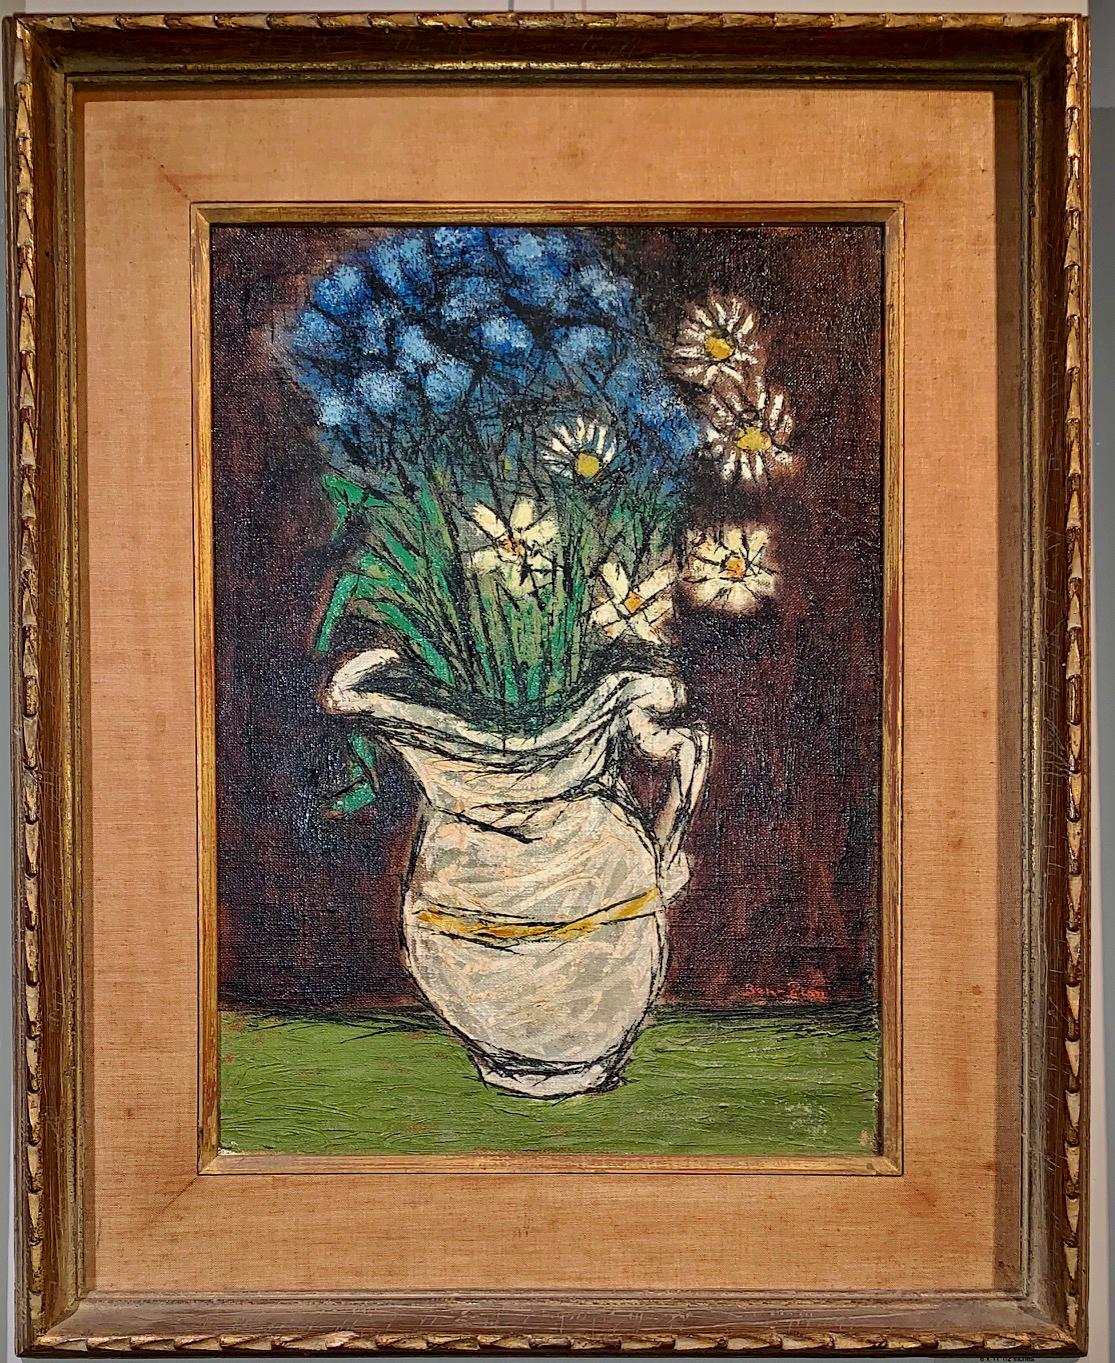  Ben-Zion (Ukraine, 1897-1987) circa 1930's "Floral Still with White Vase" 